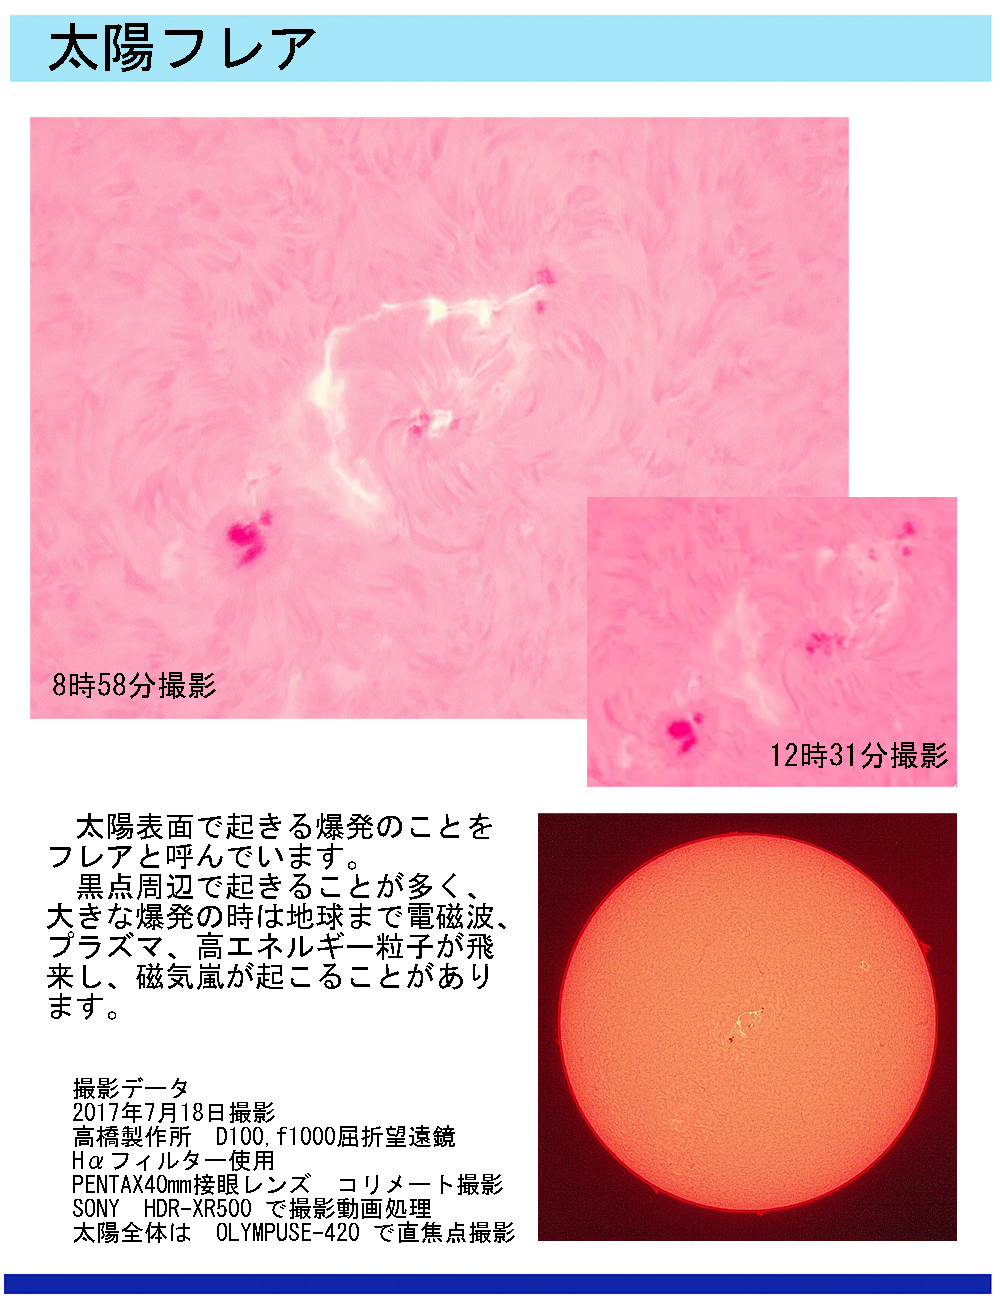 太陽のフレアーの天体写真